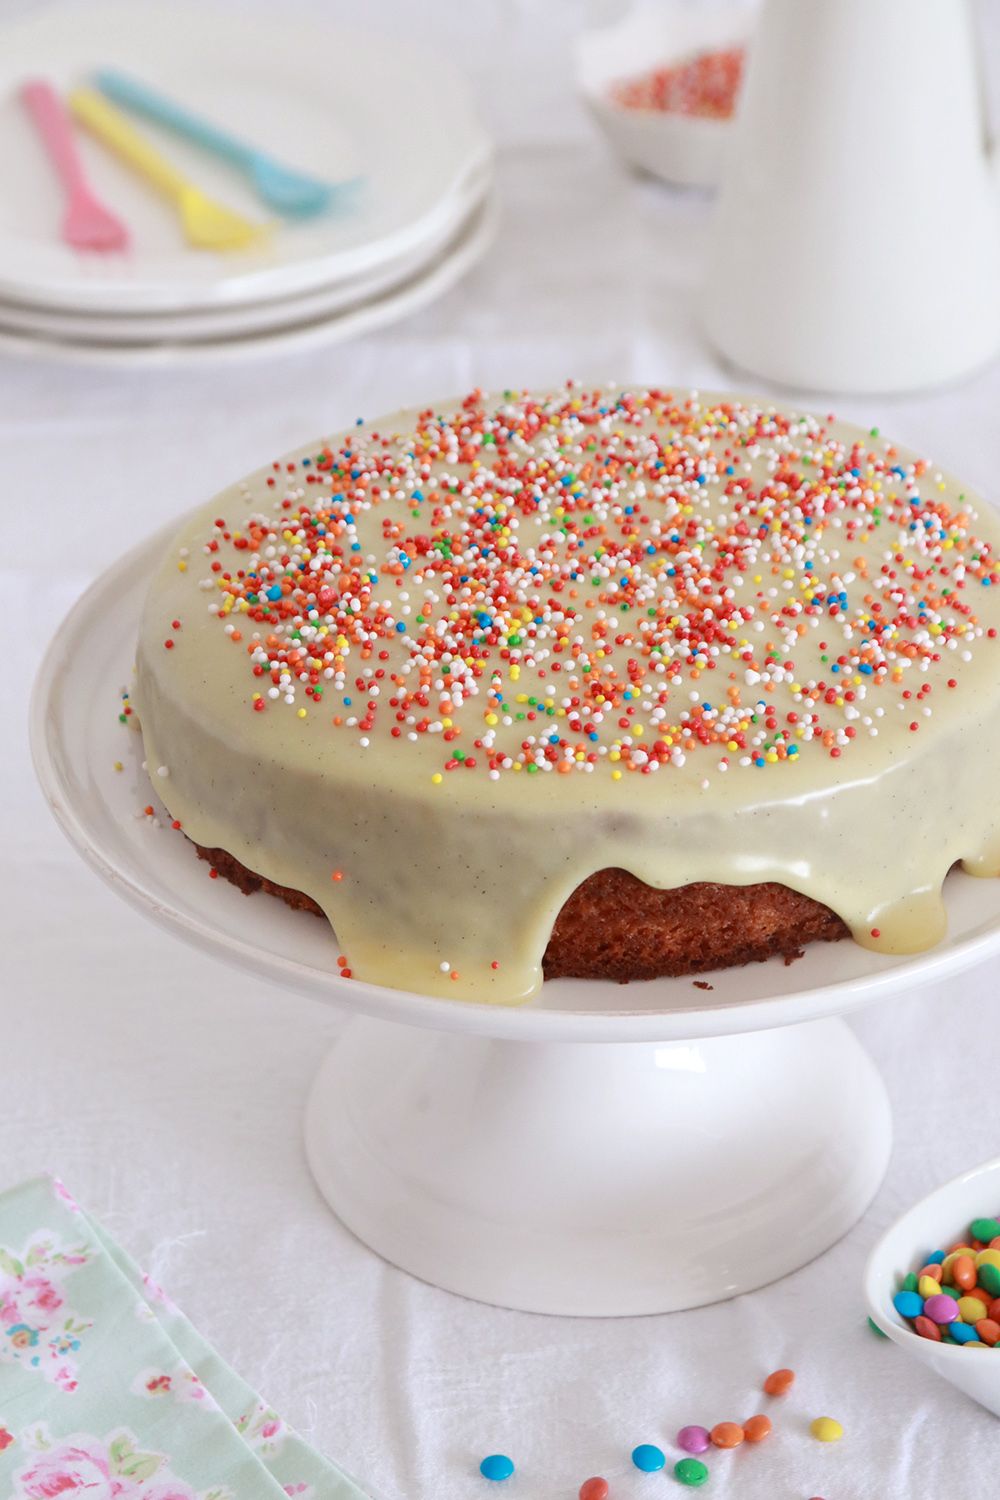 עוגת וניל עם סוכריות ליום הולדת | צילום: נטלי לוין